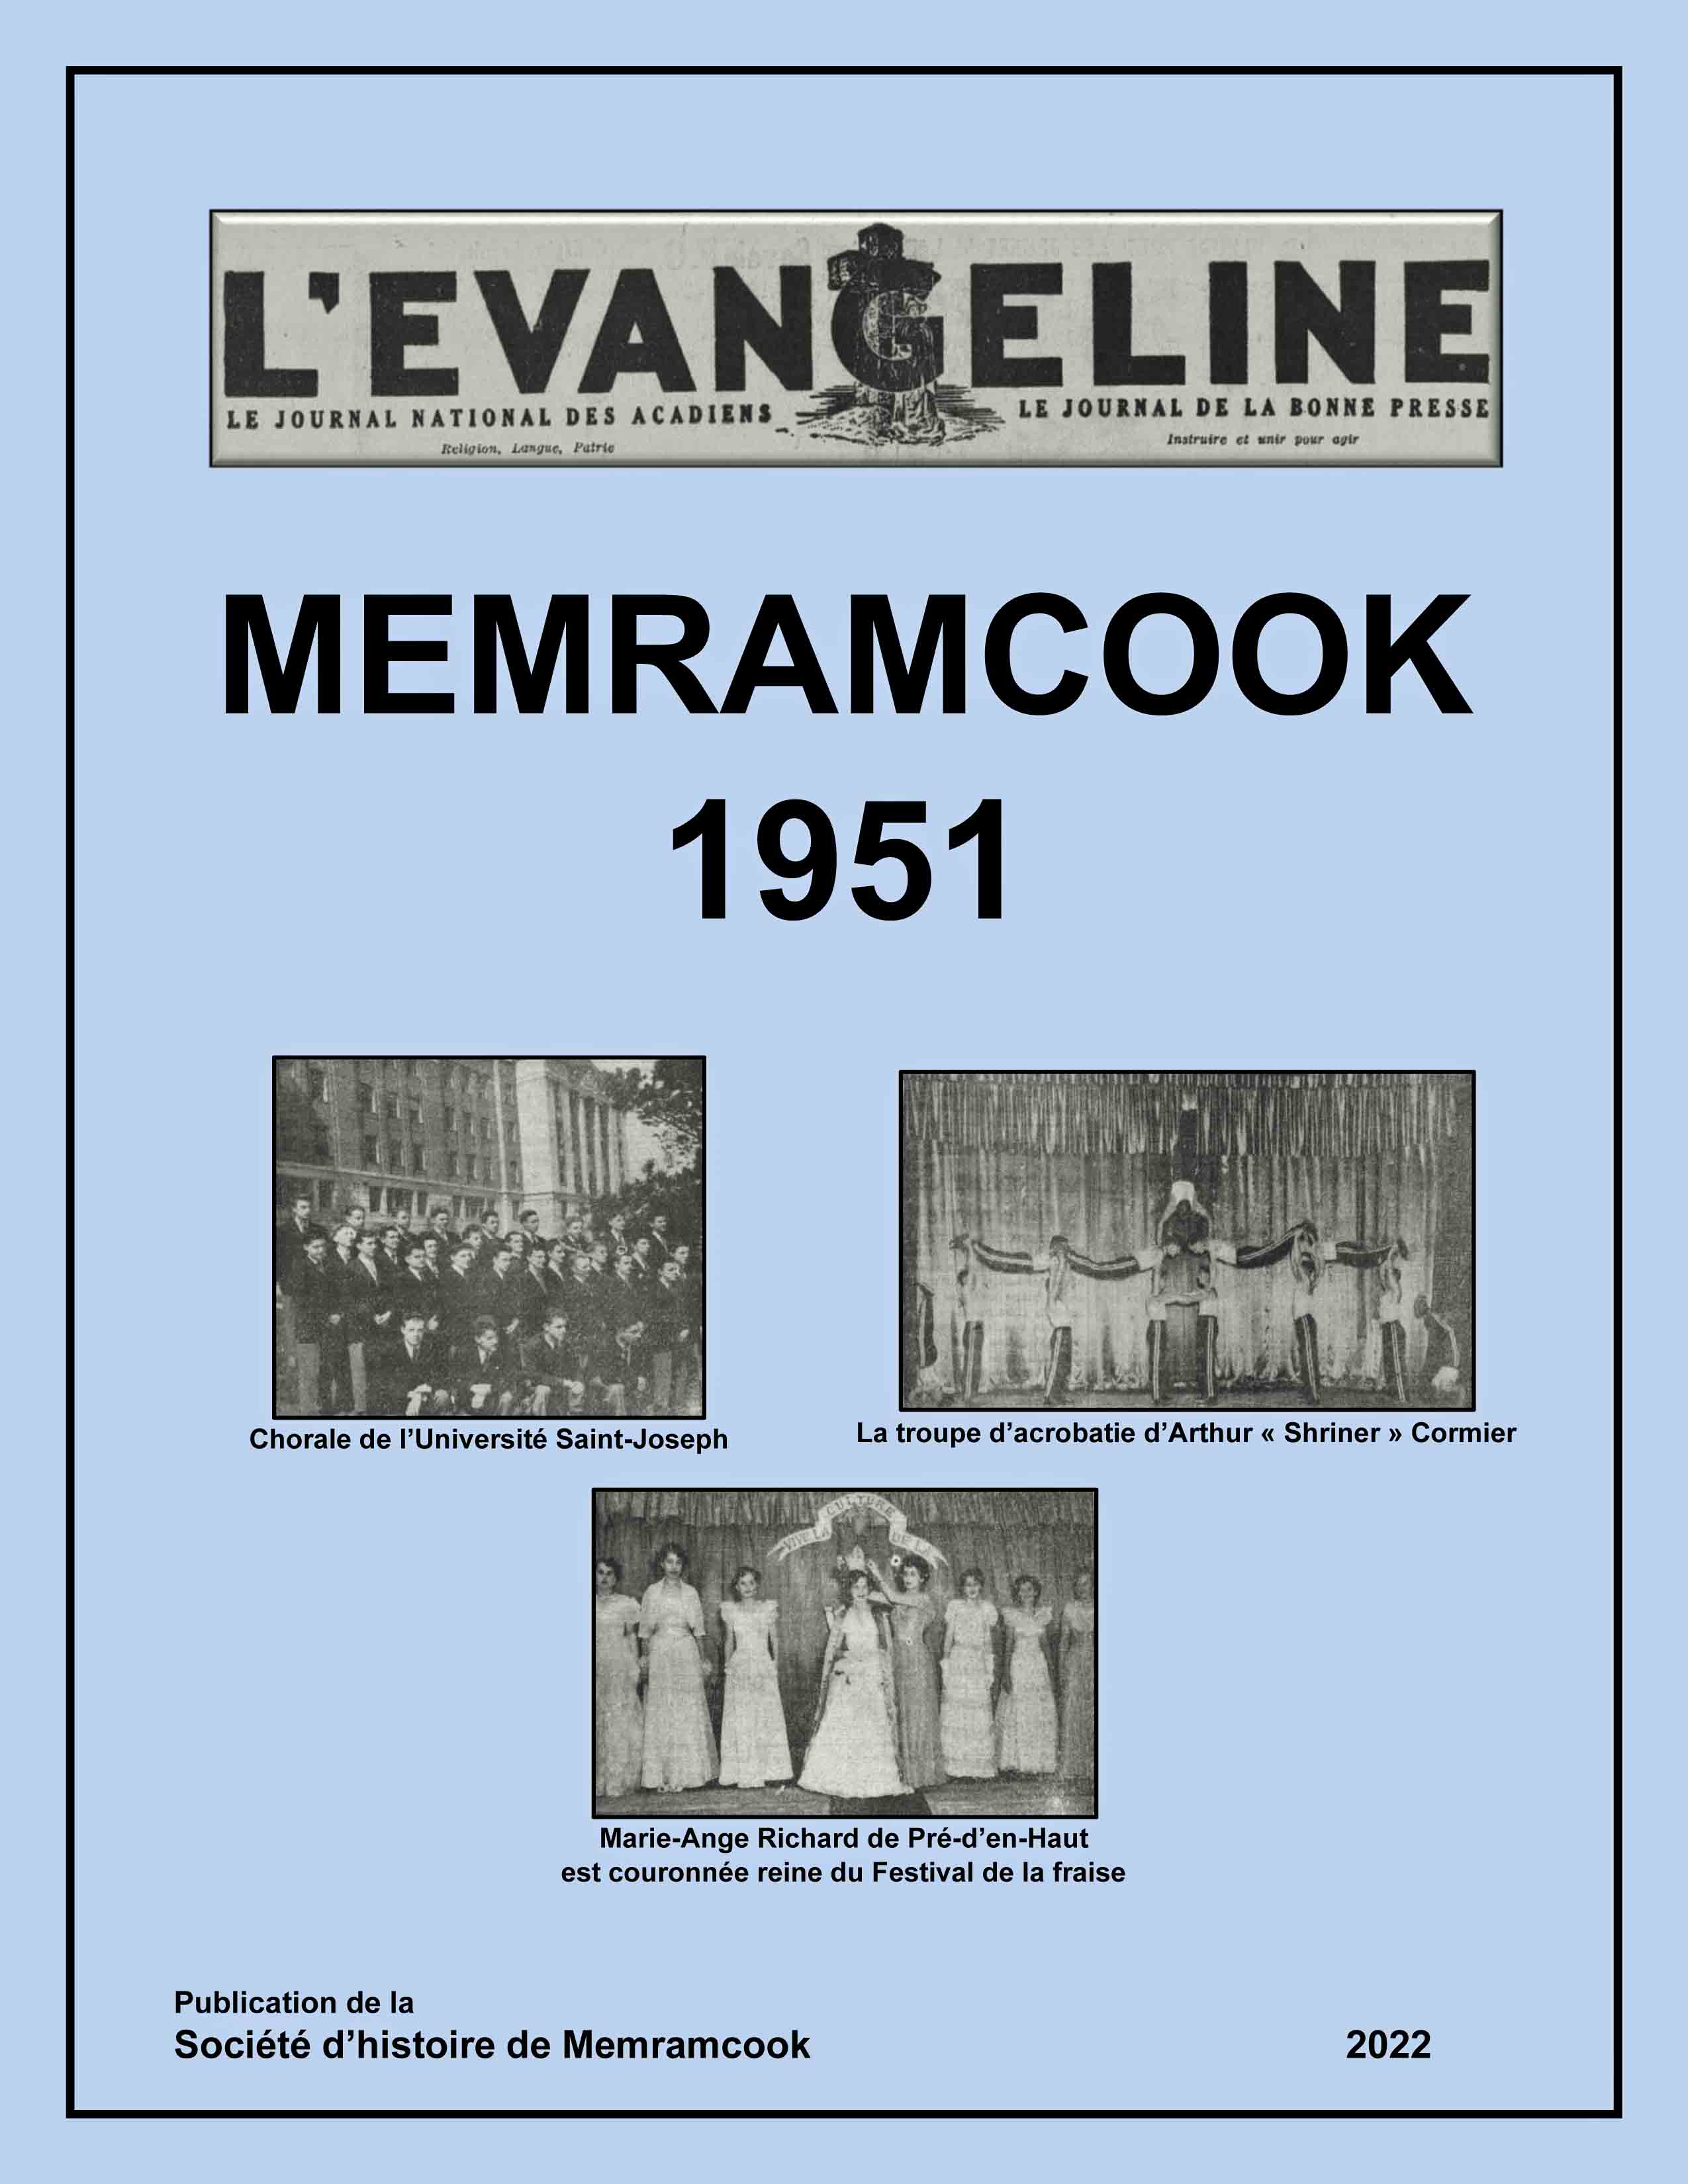 MEMRAMCOOK 1951